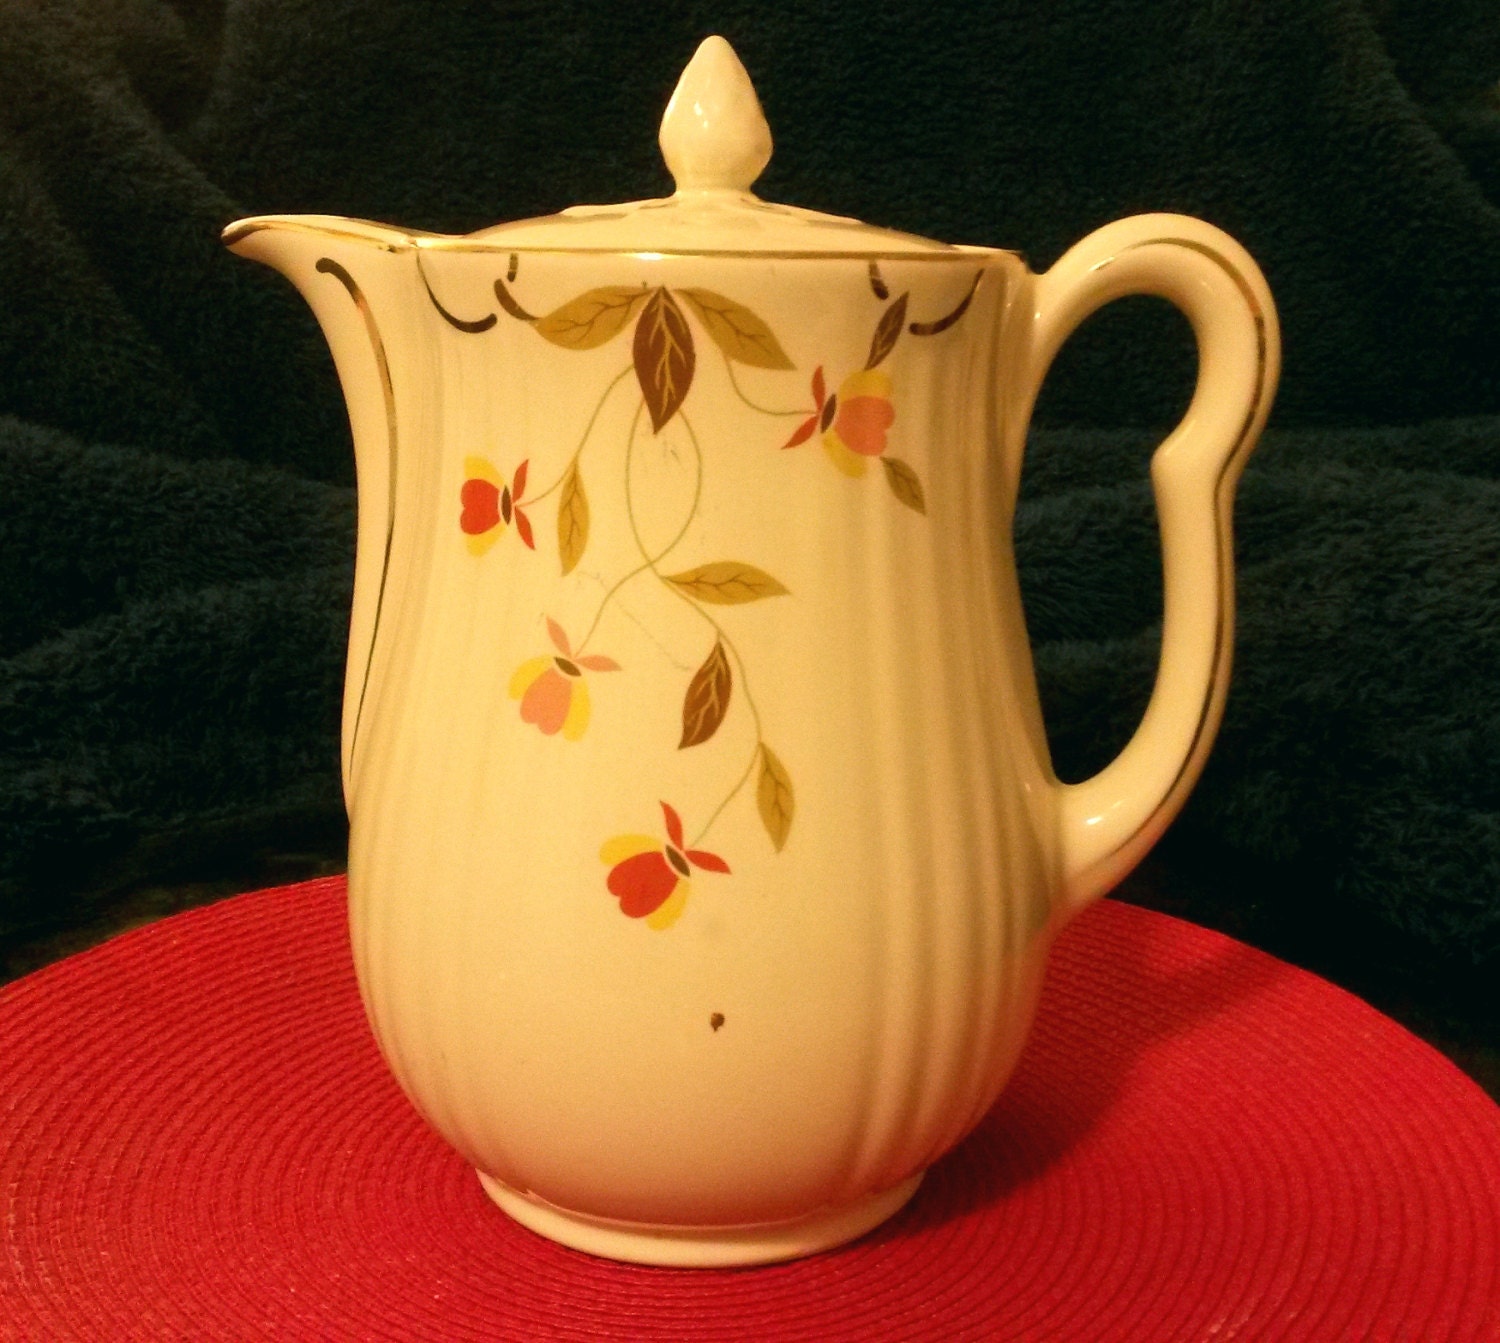 Vintage Hall Jewel Tea Autumn Leaf Coffee Pot cream with